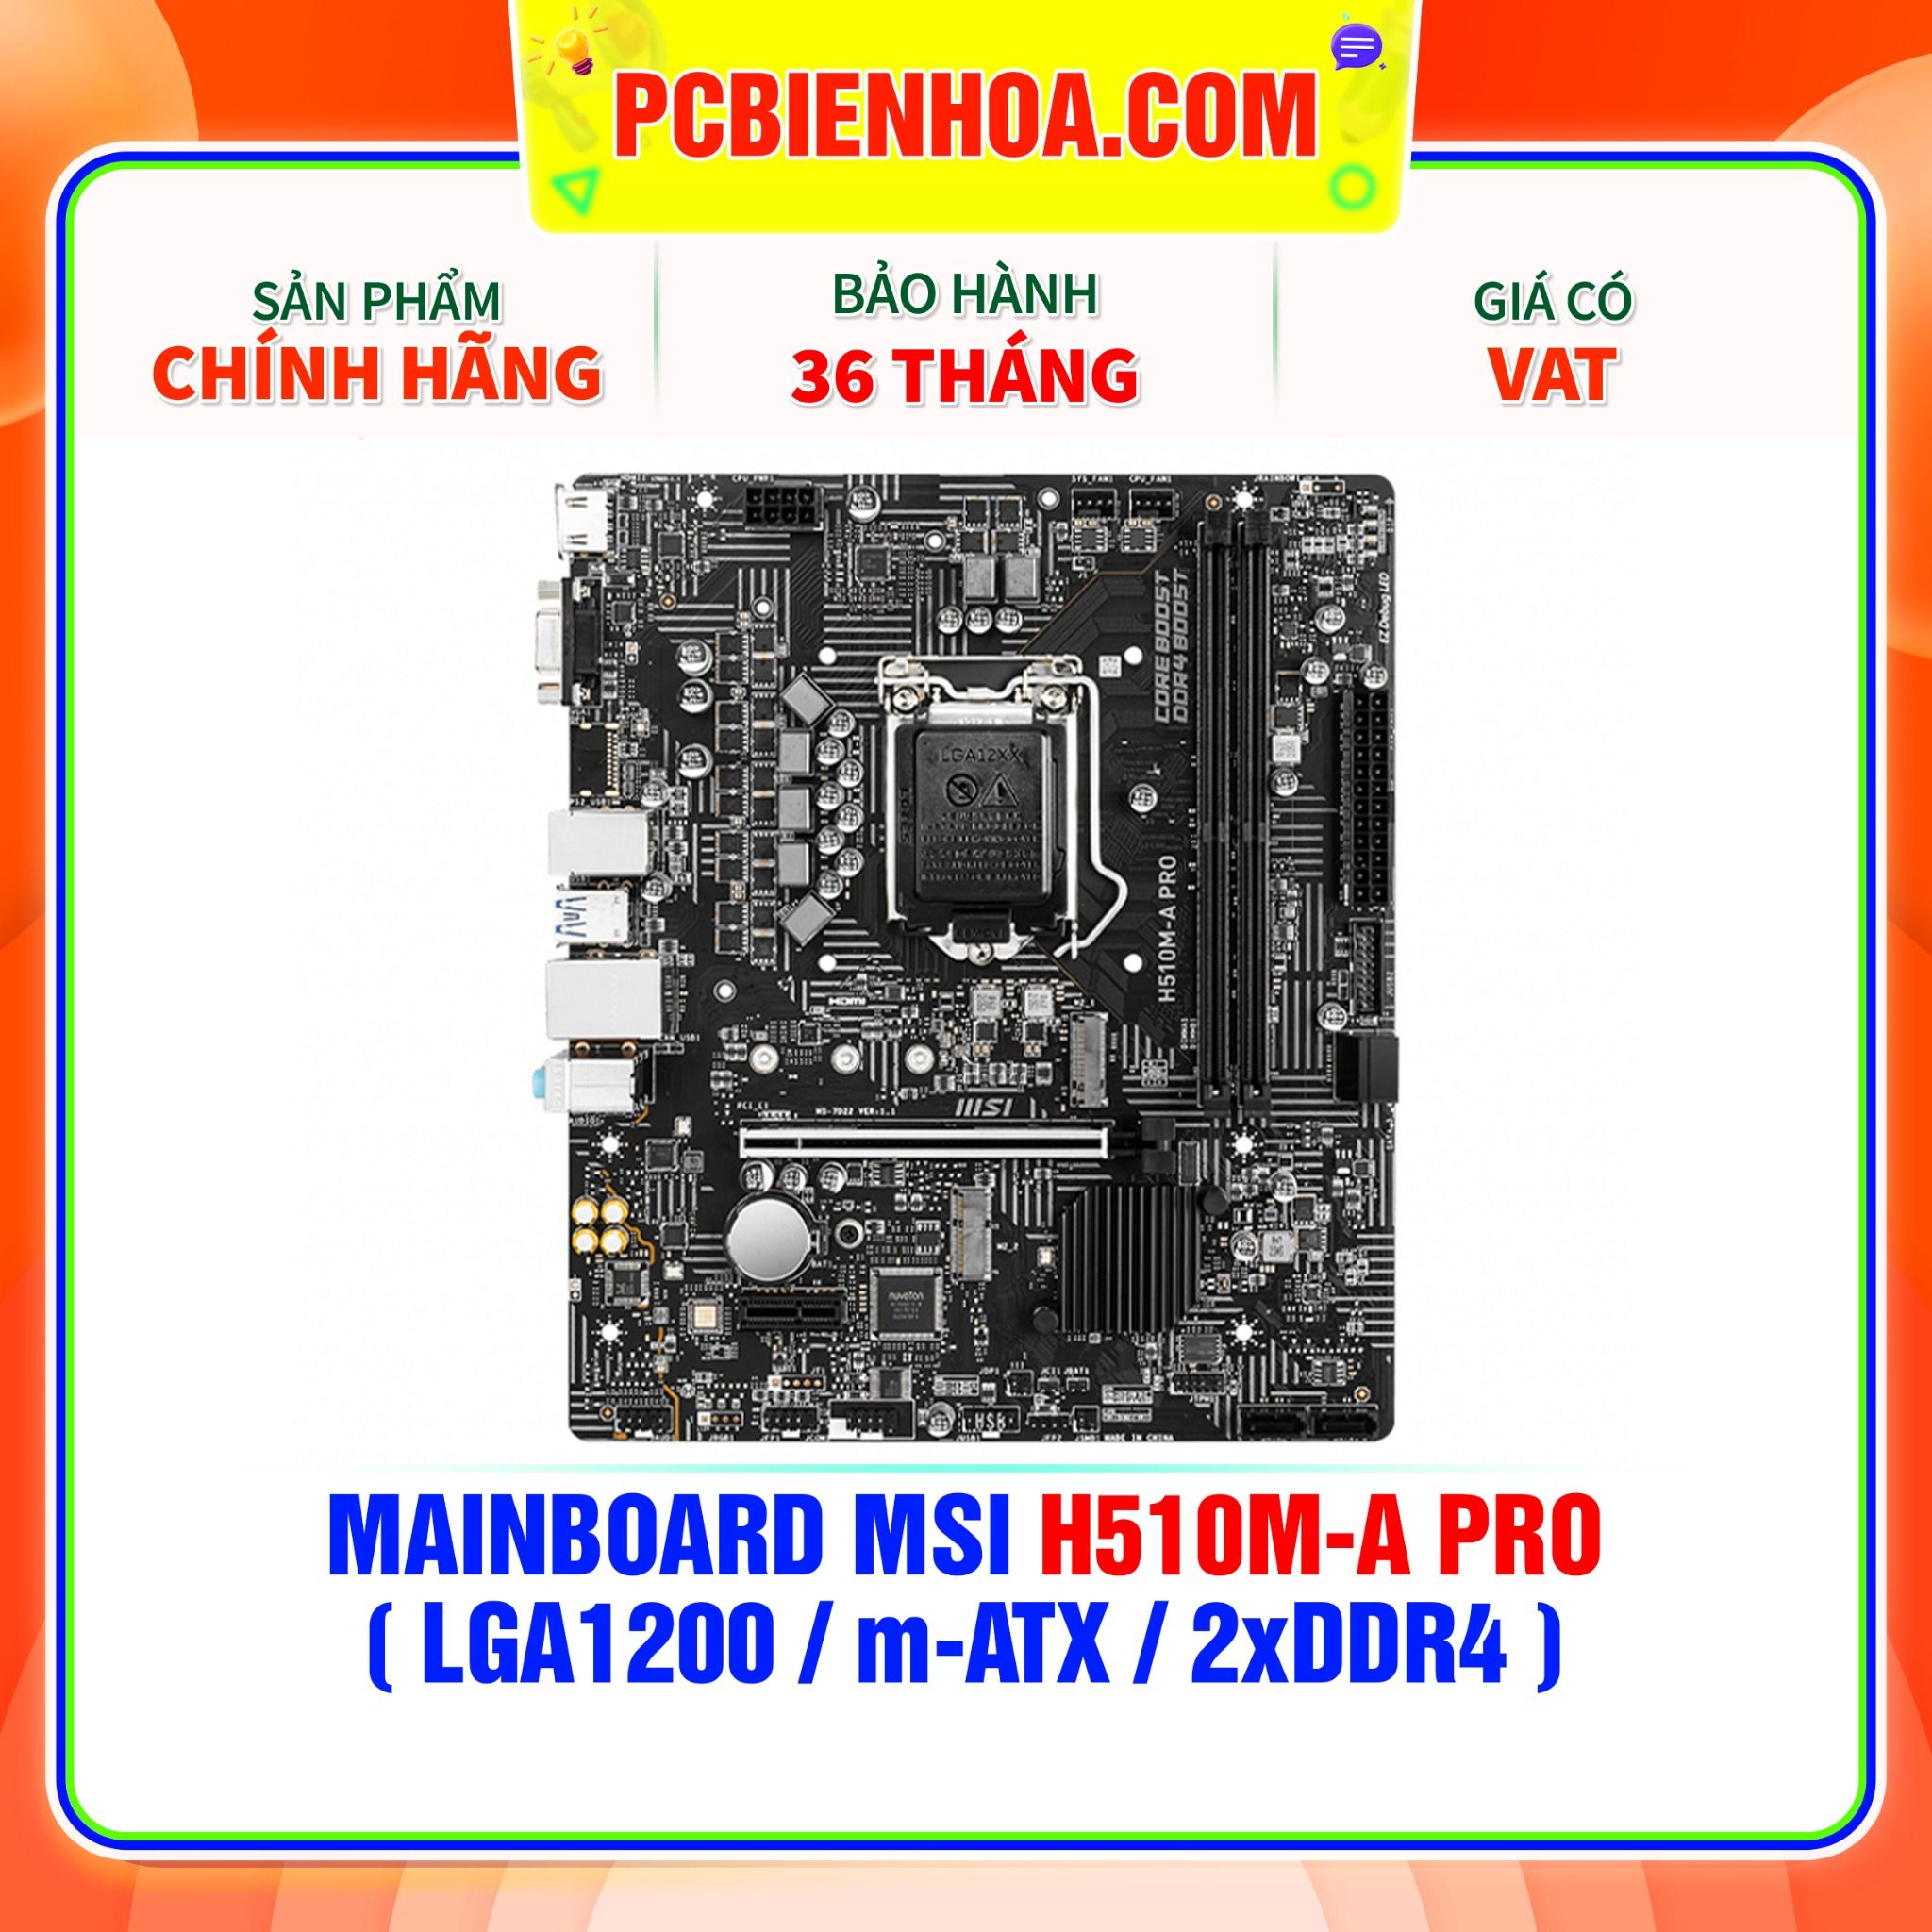  MAINBOARD MSI H510M-A PRO ( LGA1200 / m-ATX / 2xDDR4 ) 